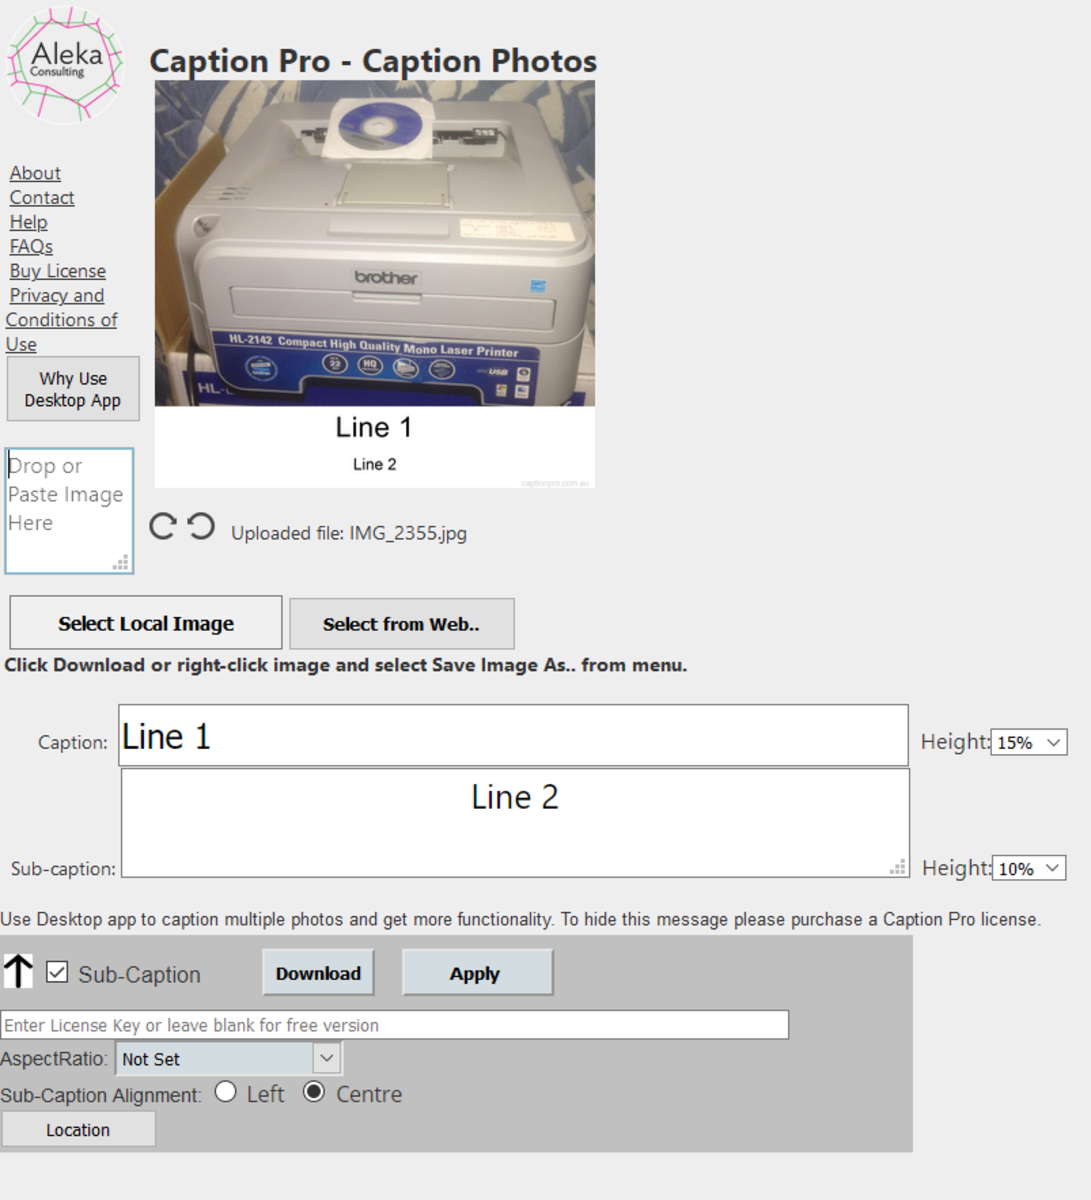 Caption Pro Web Interface  showing Caption and Sub-Caption